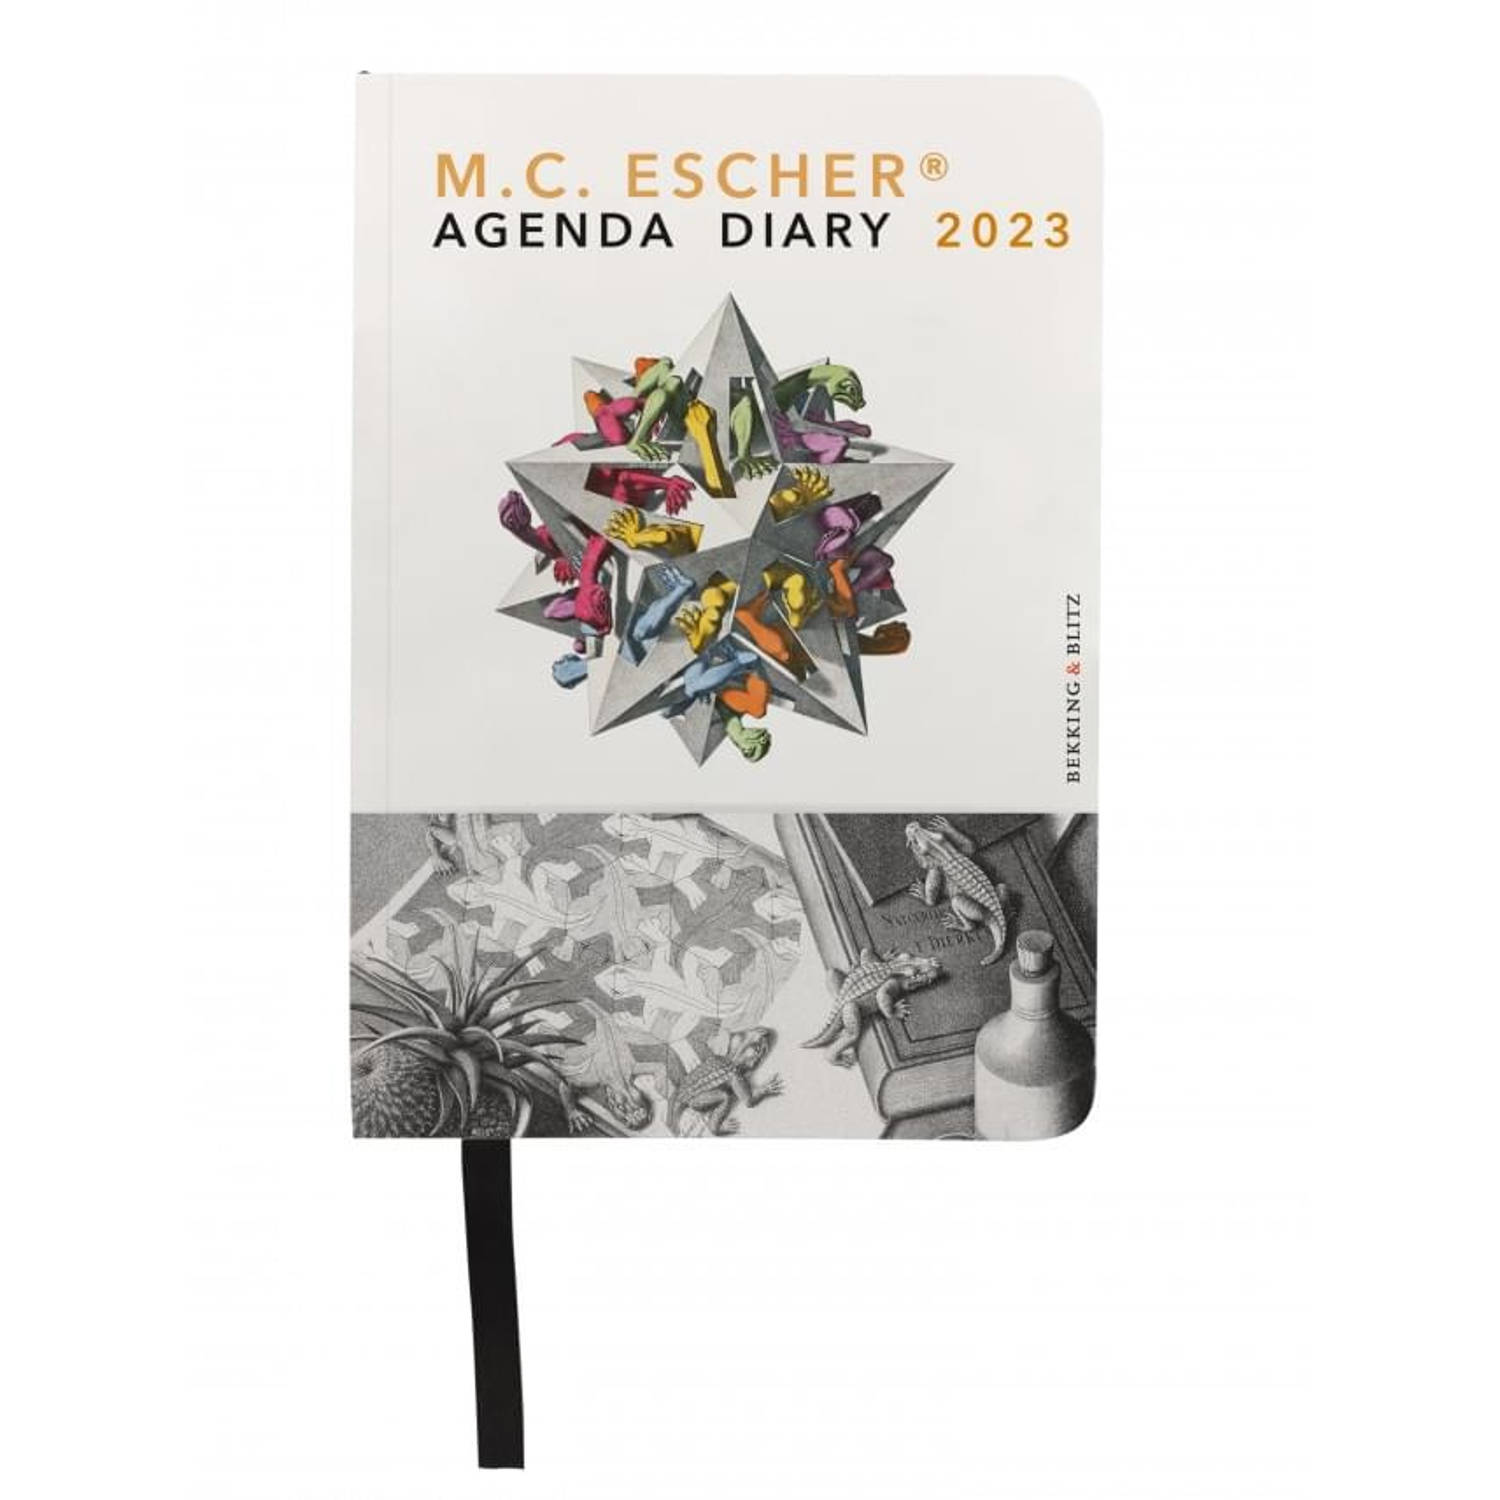 Bekking & Blitz - Miniagenda 2023 - M.C. Escher mini agenda 2023 - Zakagenda - 11 x 15 cm - Kunstagenda - Museumagenda - Met handig leeslint - Weekoverzicht op 1 pagina  - Rijk geï